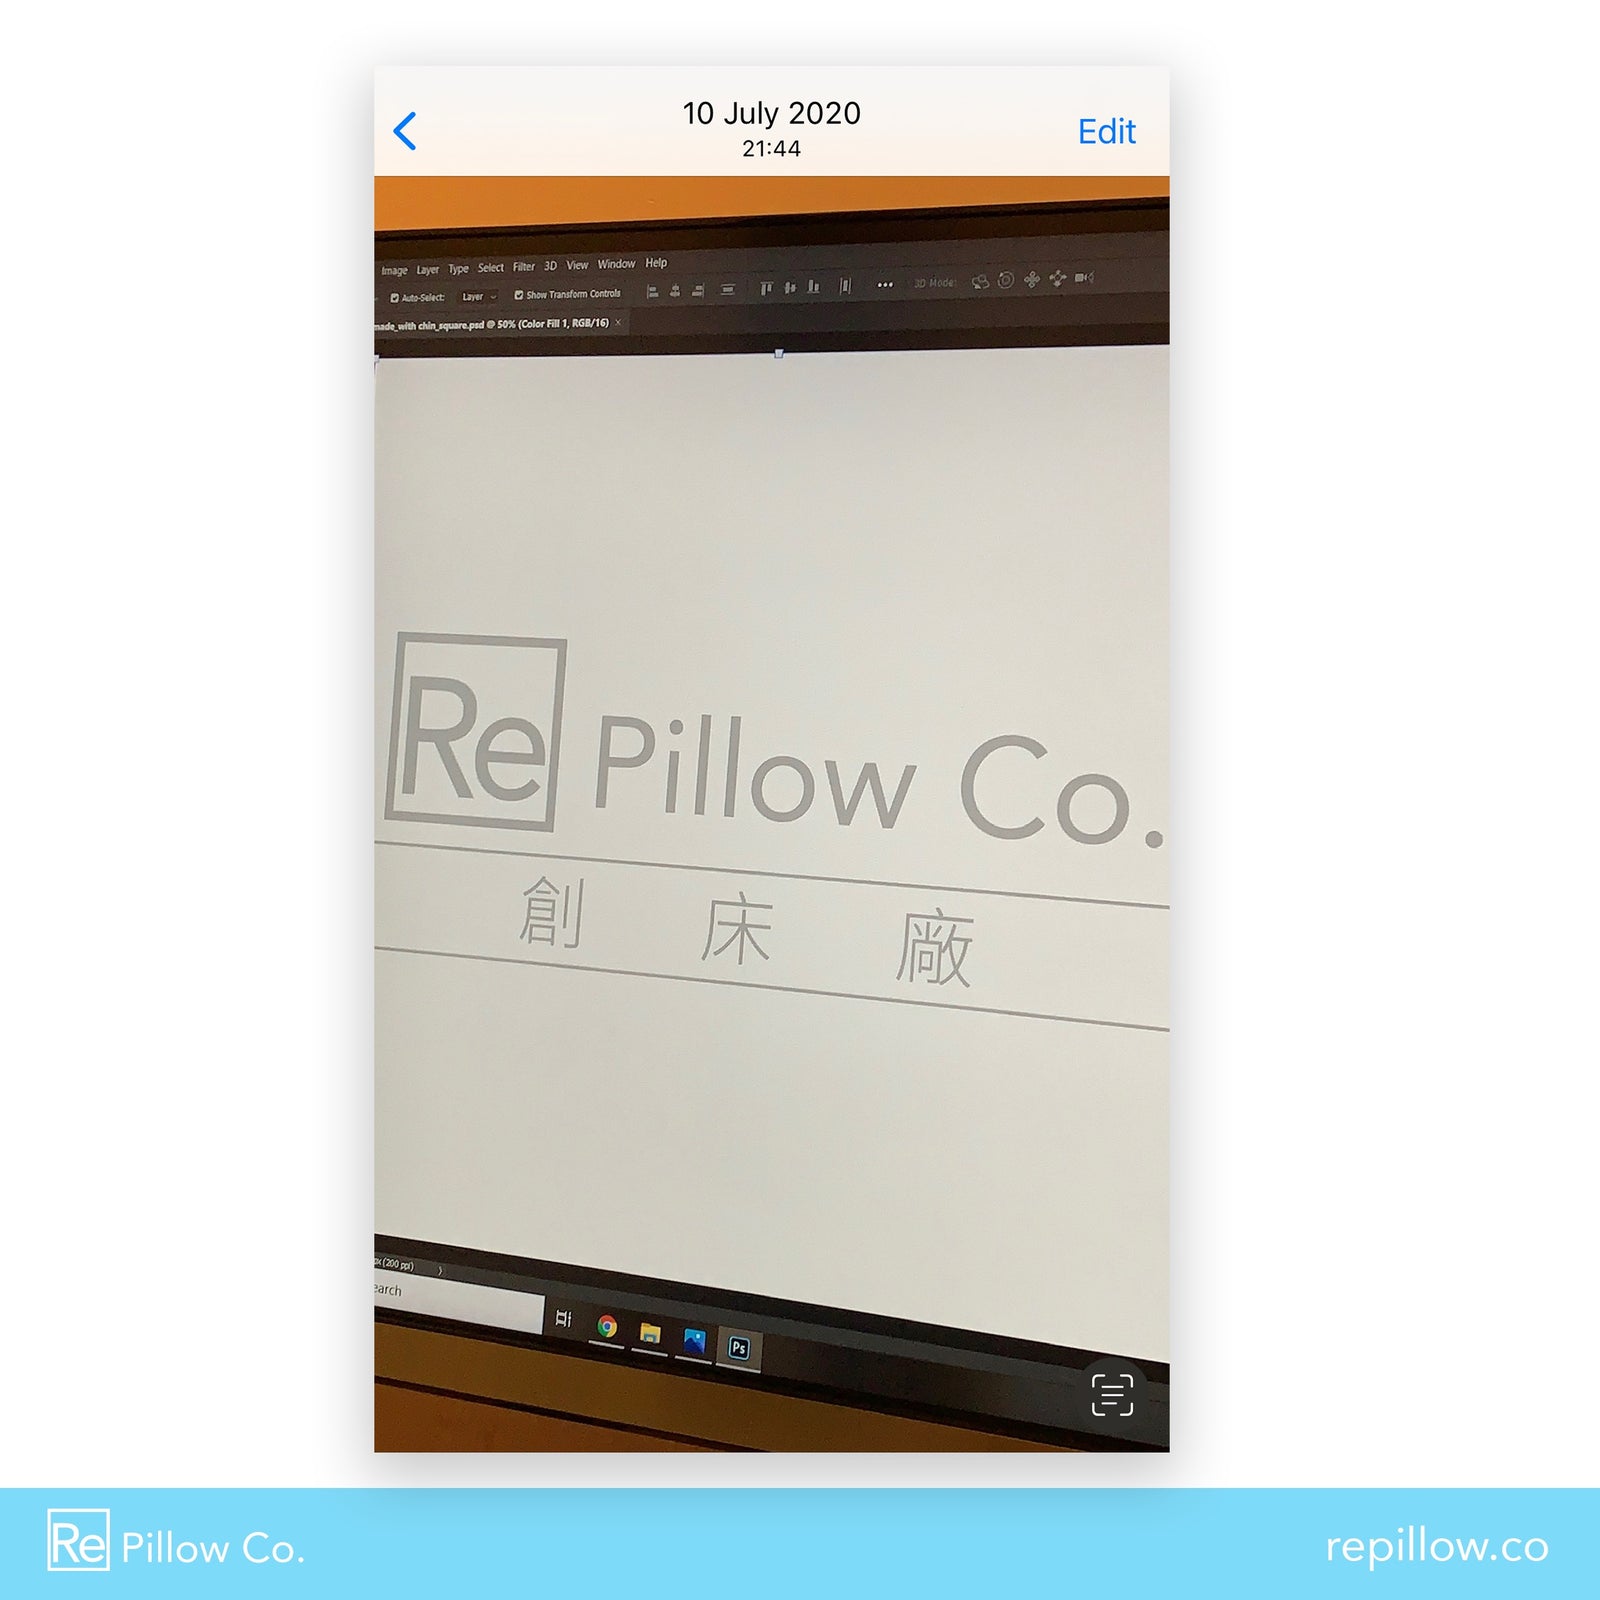 （回帶）Re Pillow Co. 開初的中文名